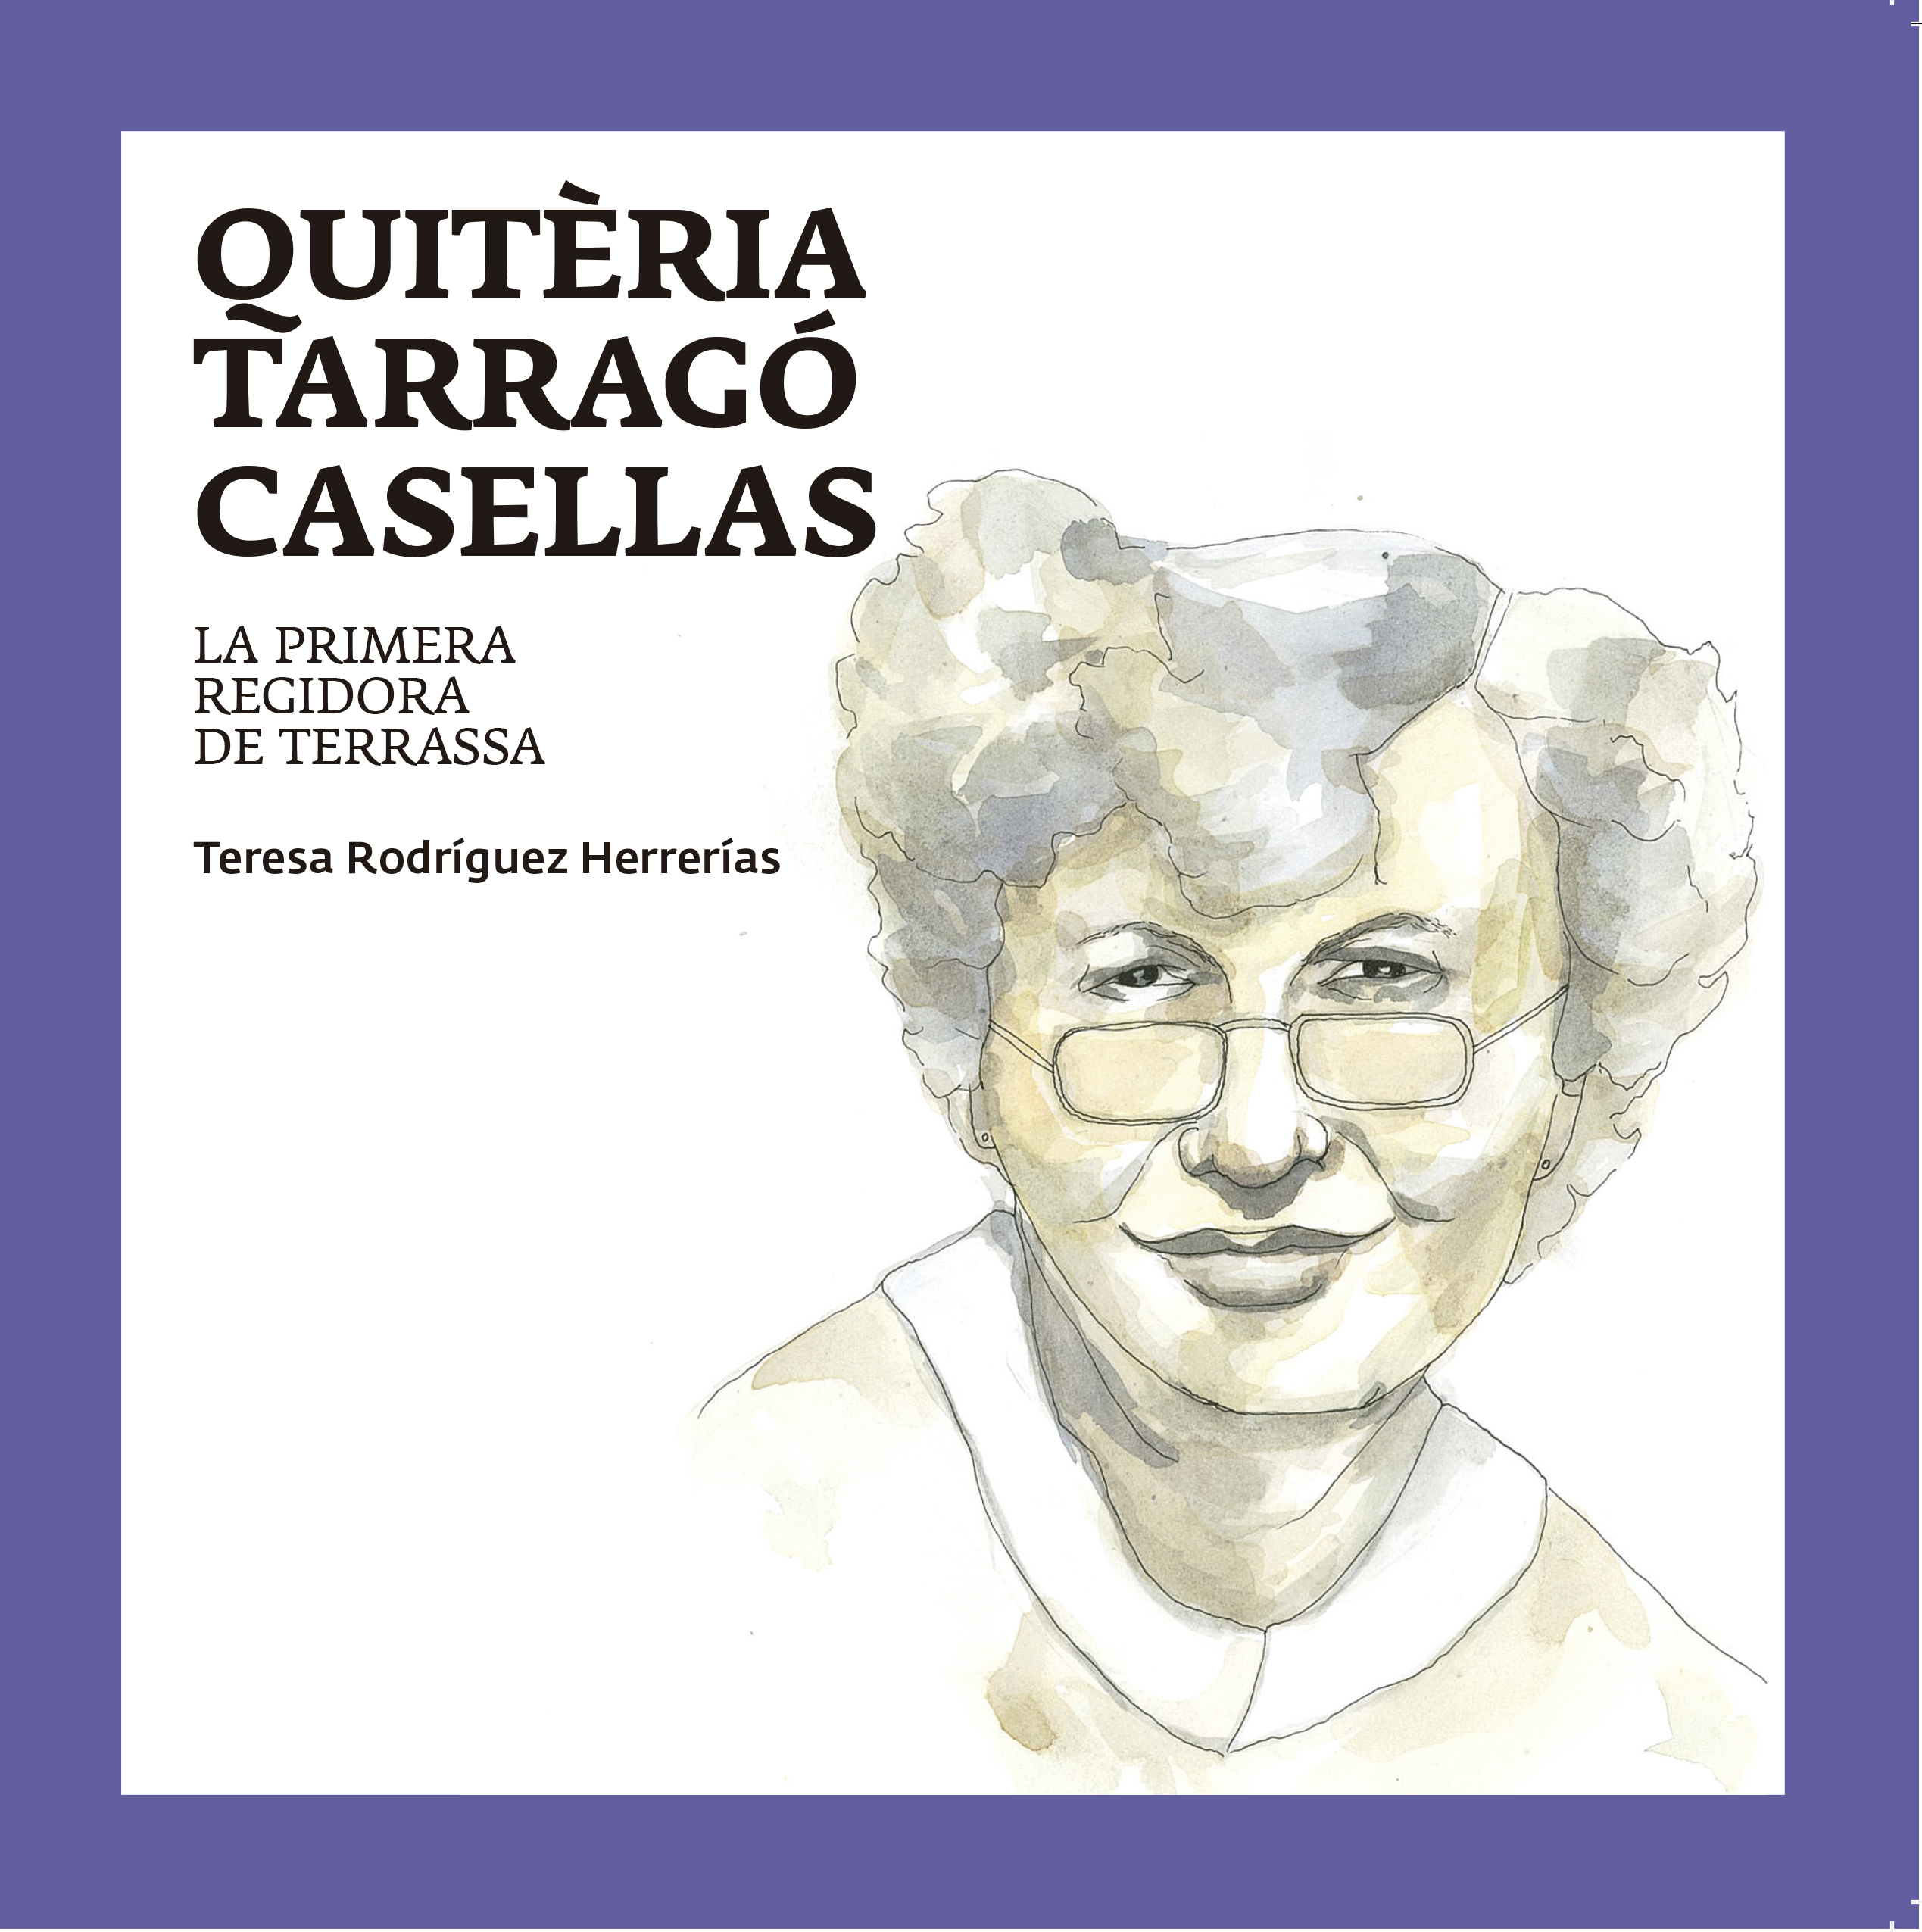 Il·lustració en aquarel·la de la Quitèria Tarragó Casellas, primera regidora de Terrassa. Una persona gran amb els cabells curts i ulleres 